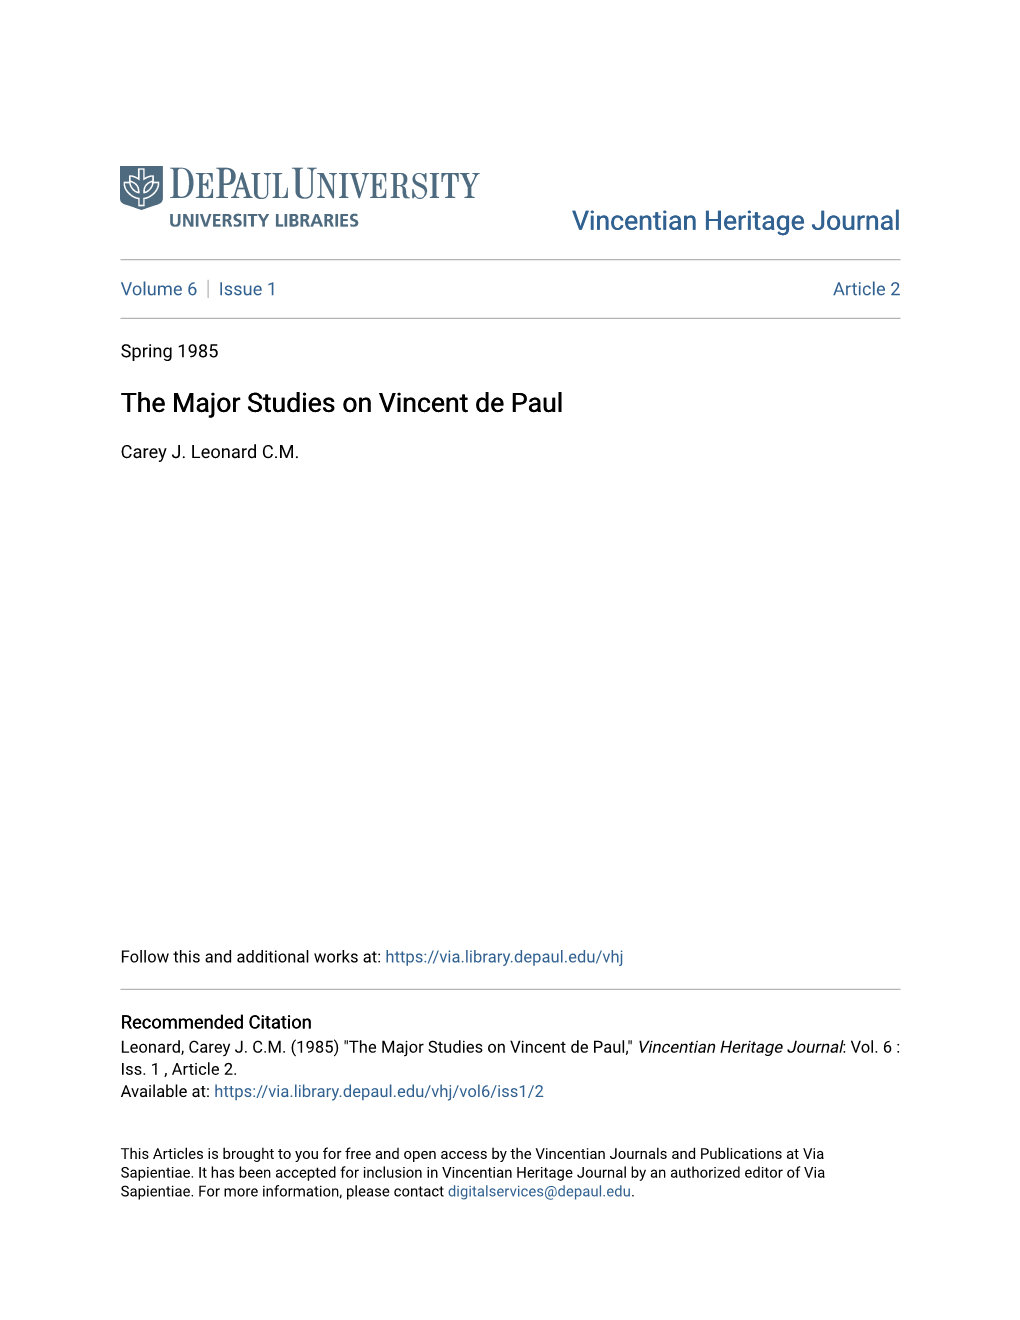 The Major Studies on Vincent De Paul